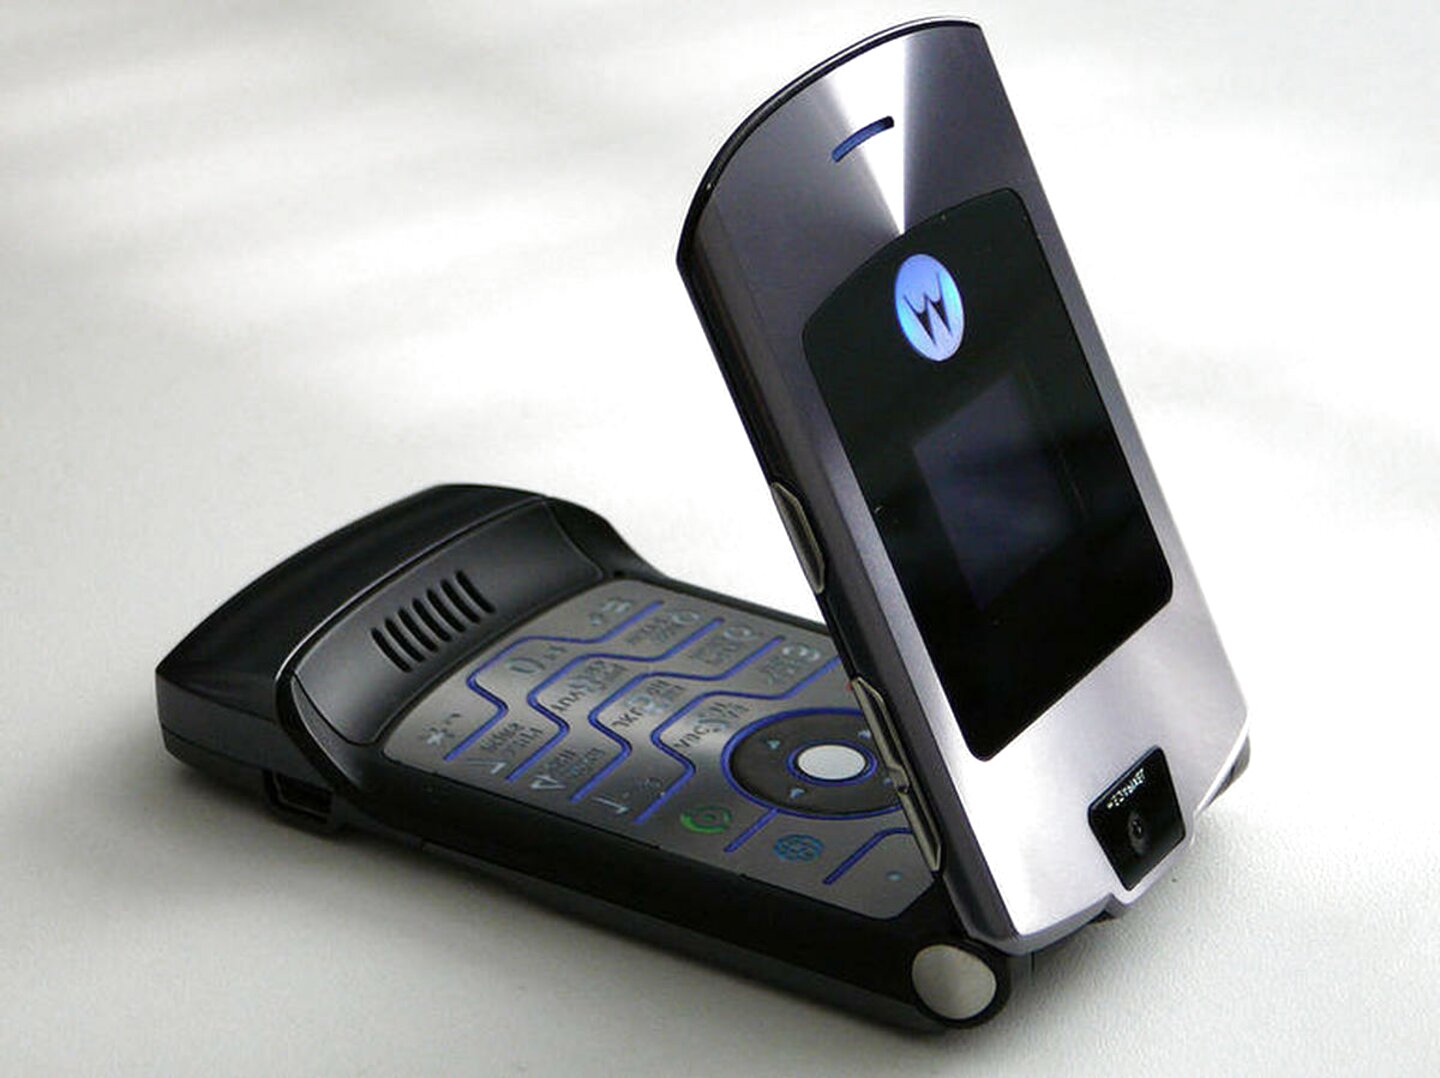 Motorola Flip Phone for sale in UK | 62 used Motorola Flip Phones